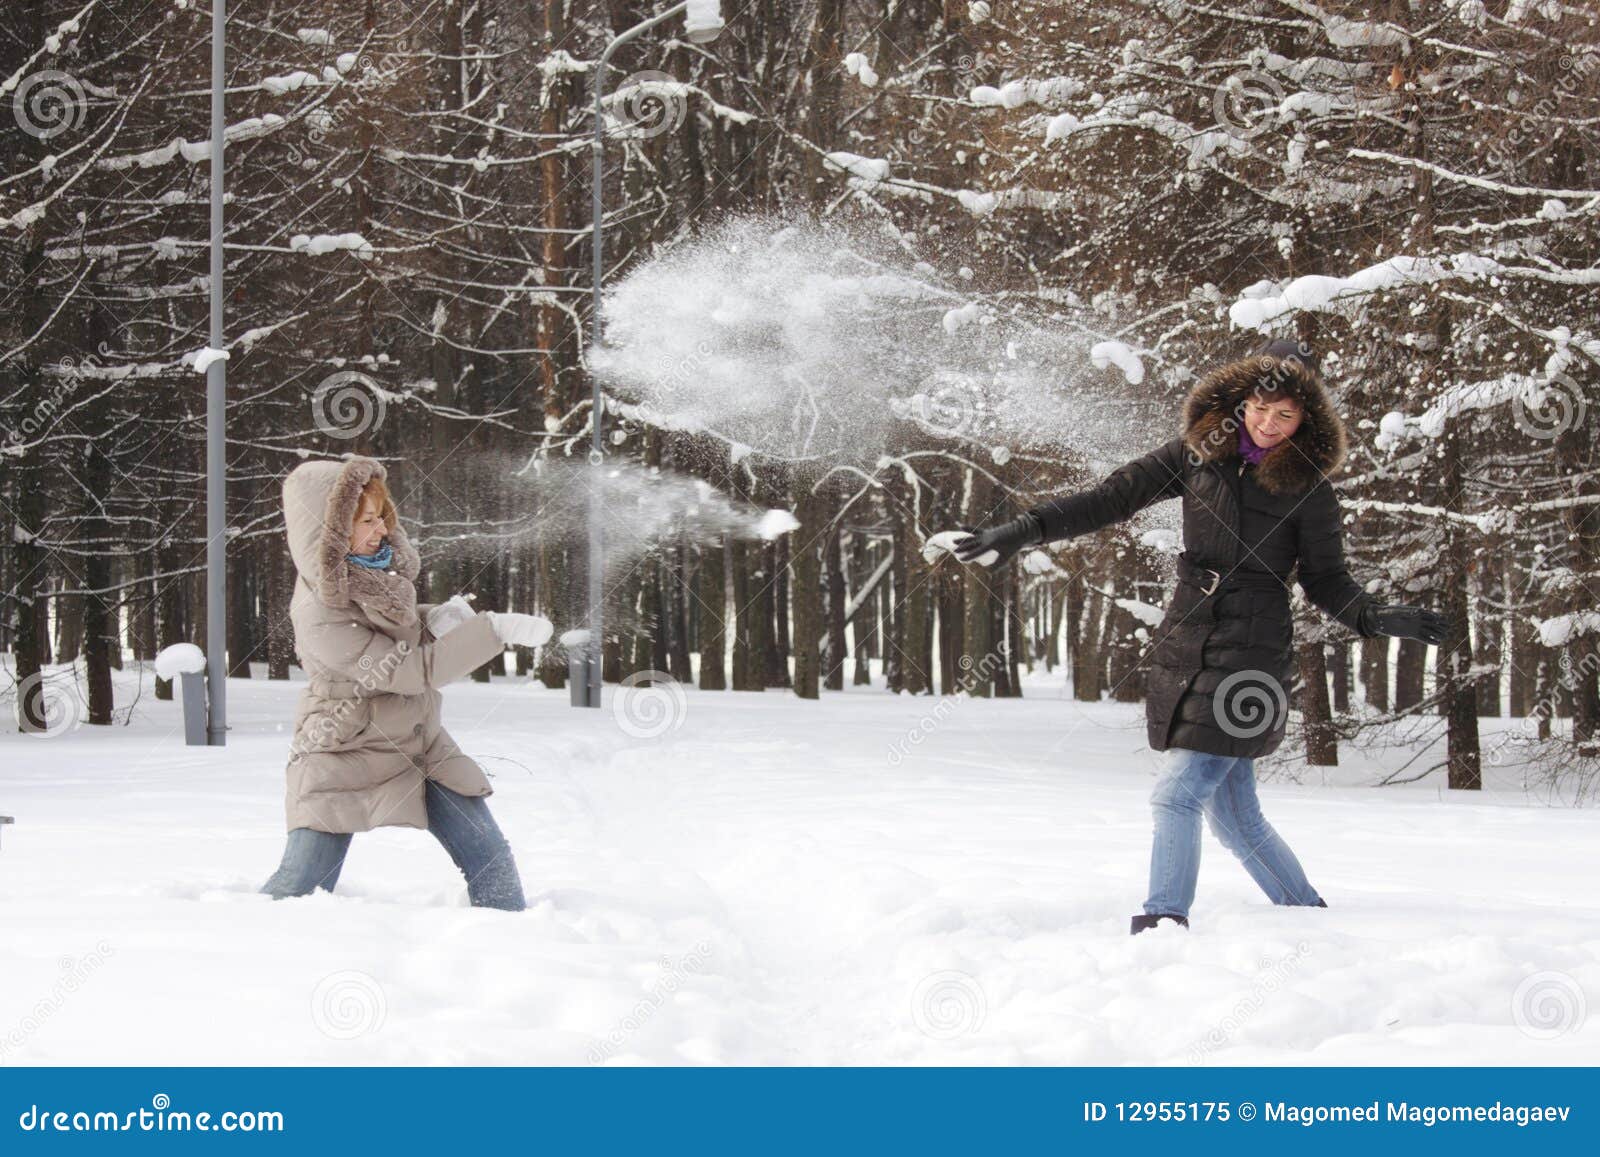 Снежки по взрослому. Девочка играет в снежки. Снег за шиворот. Две девушки кидаются снежками. Игра в снежки с девушкой.